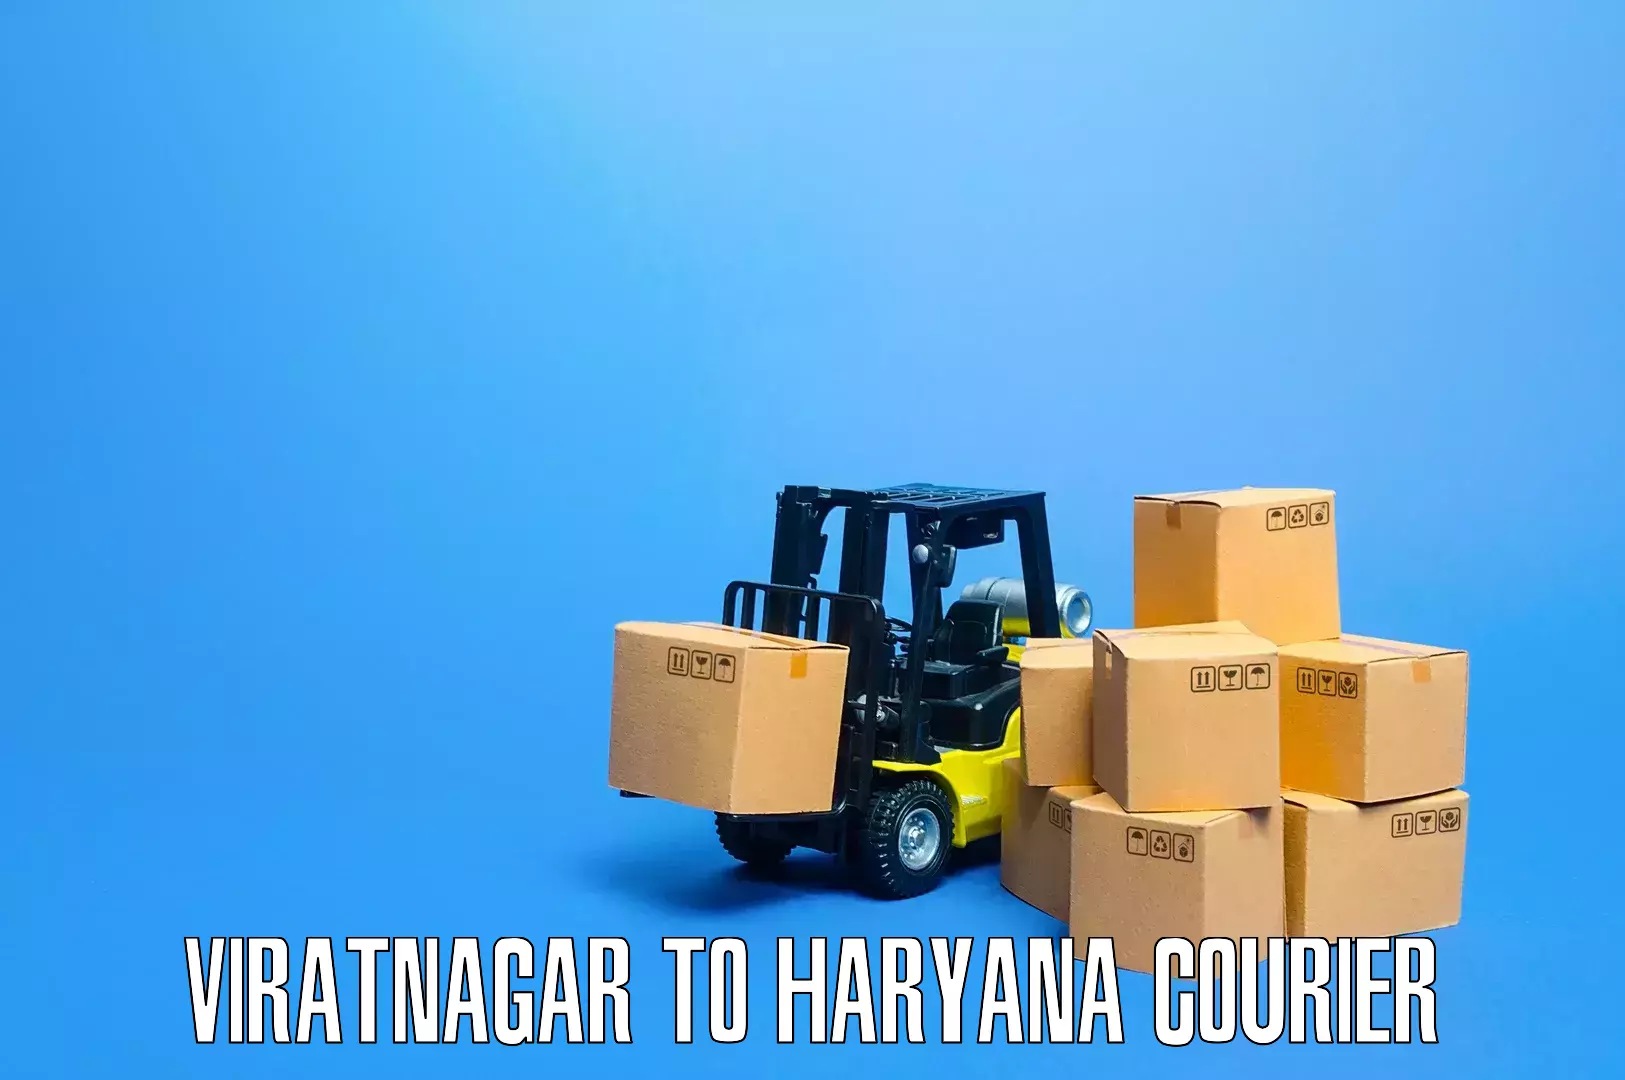 Furniture moving plans Viratnagar to Guhla